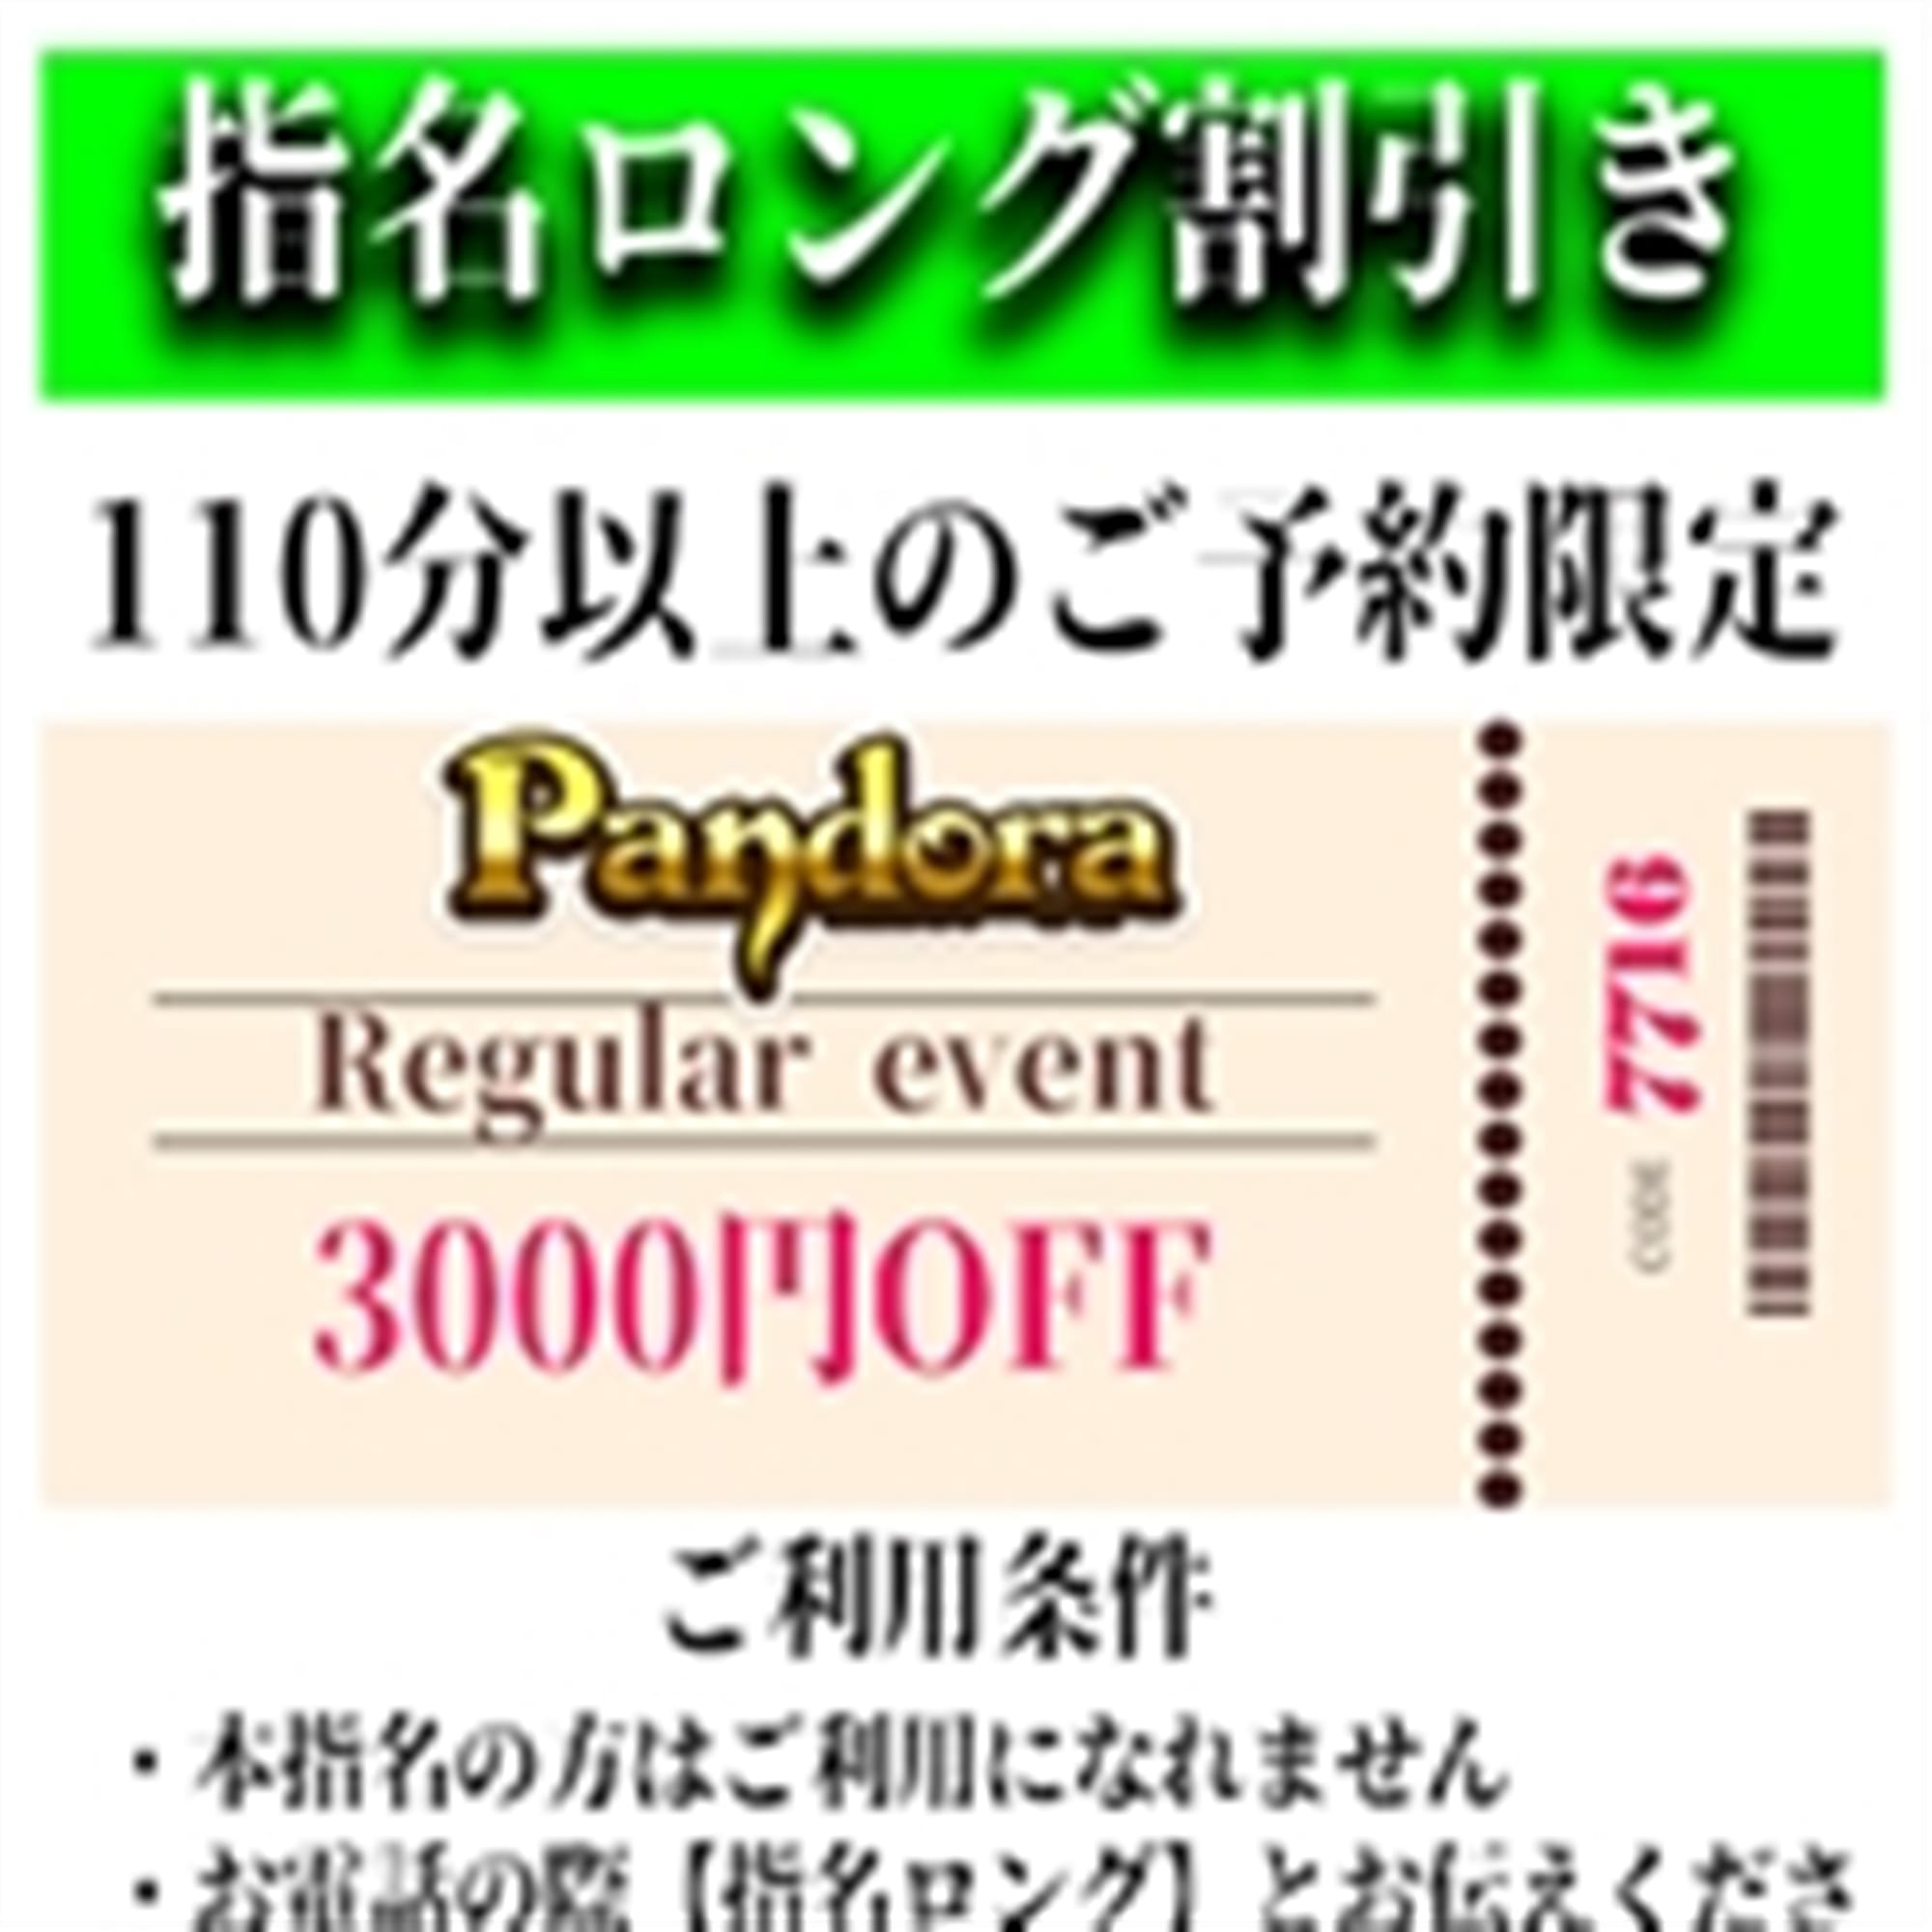 「ご指名のお客様も遊べるロングコース割引」04/27(土) 09:10 | Pandora(パンドラ)新潟のお得なニュース